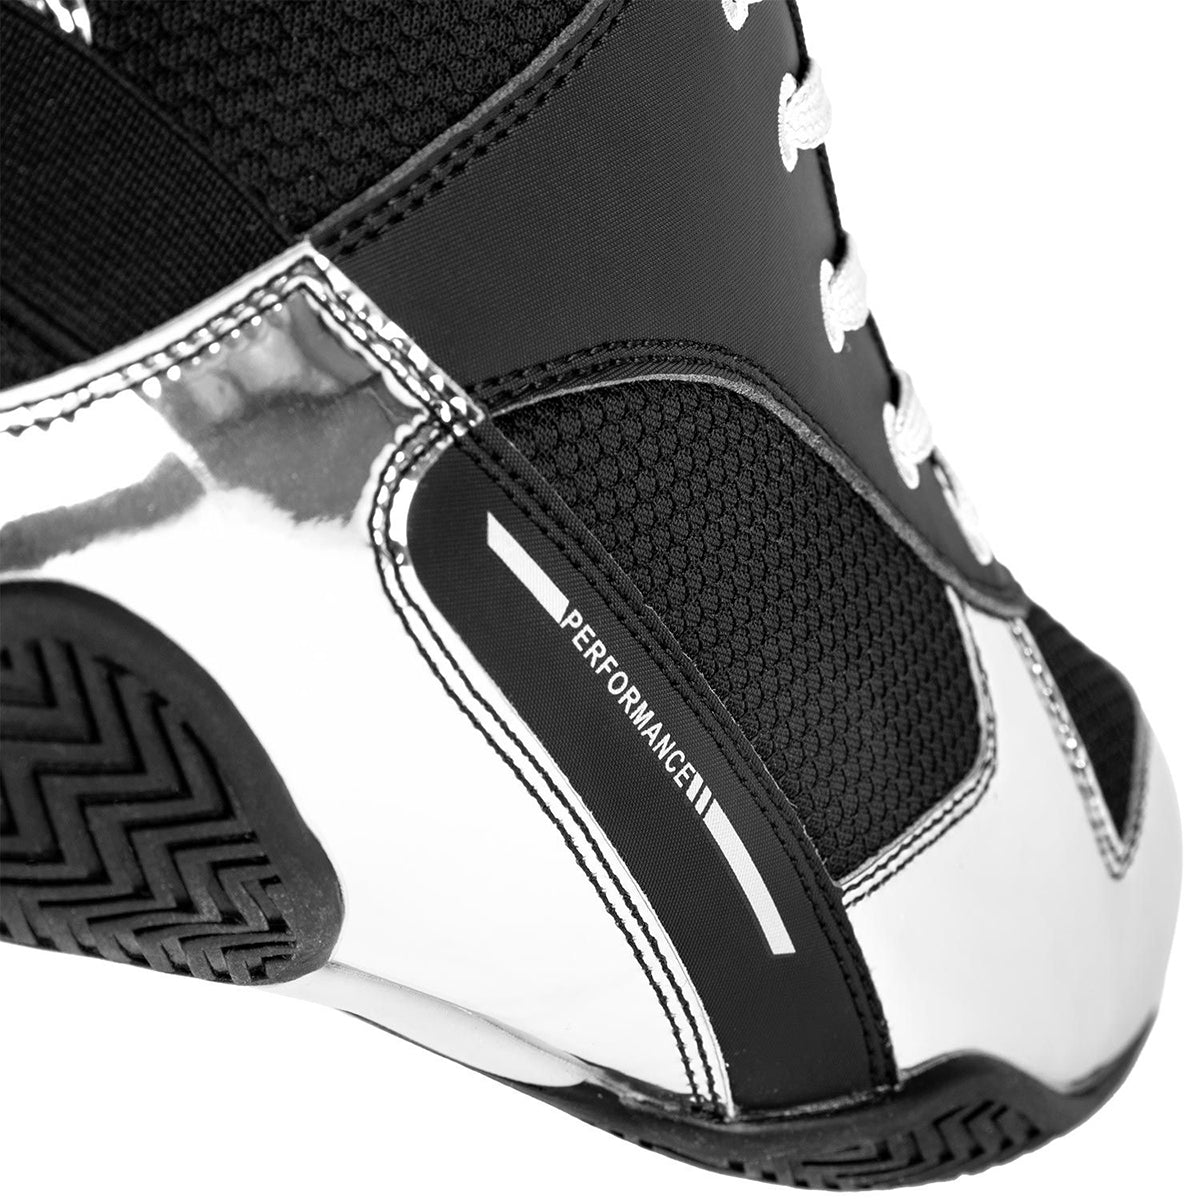 Venum Elite Professional Boxing Shoes - Black/Silver Venum